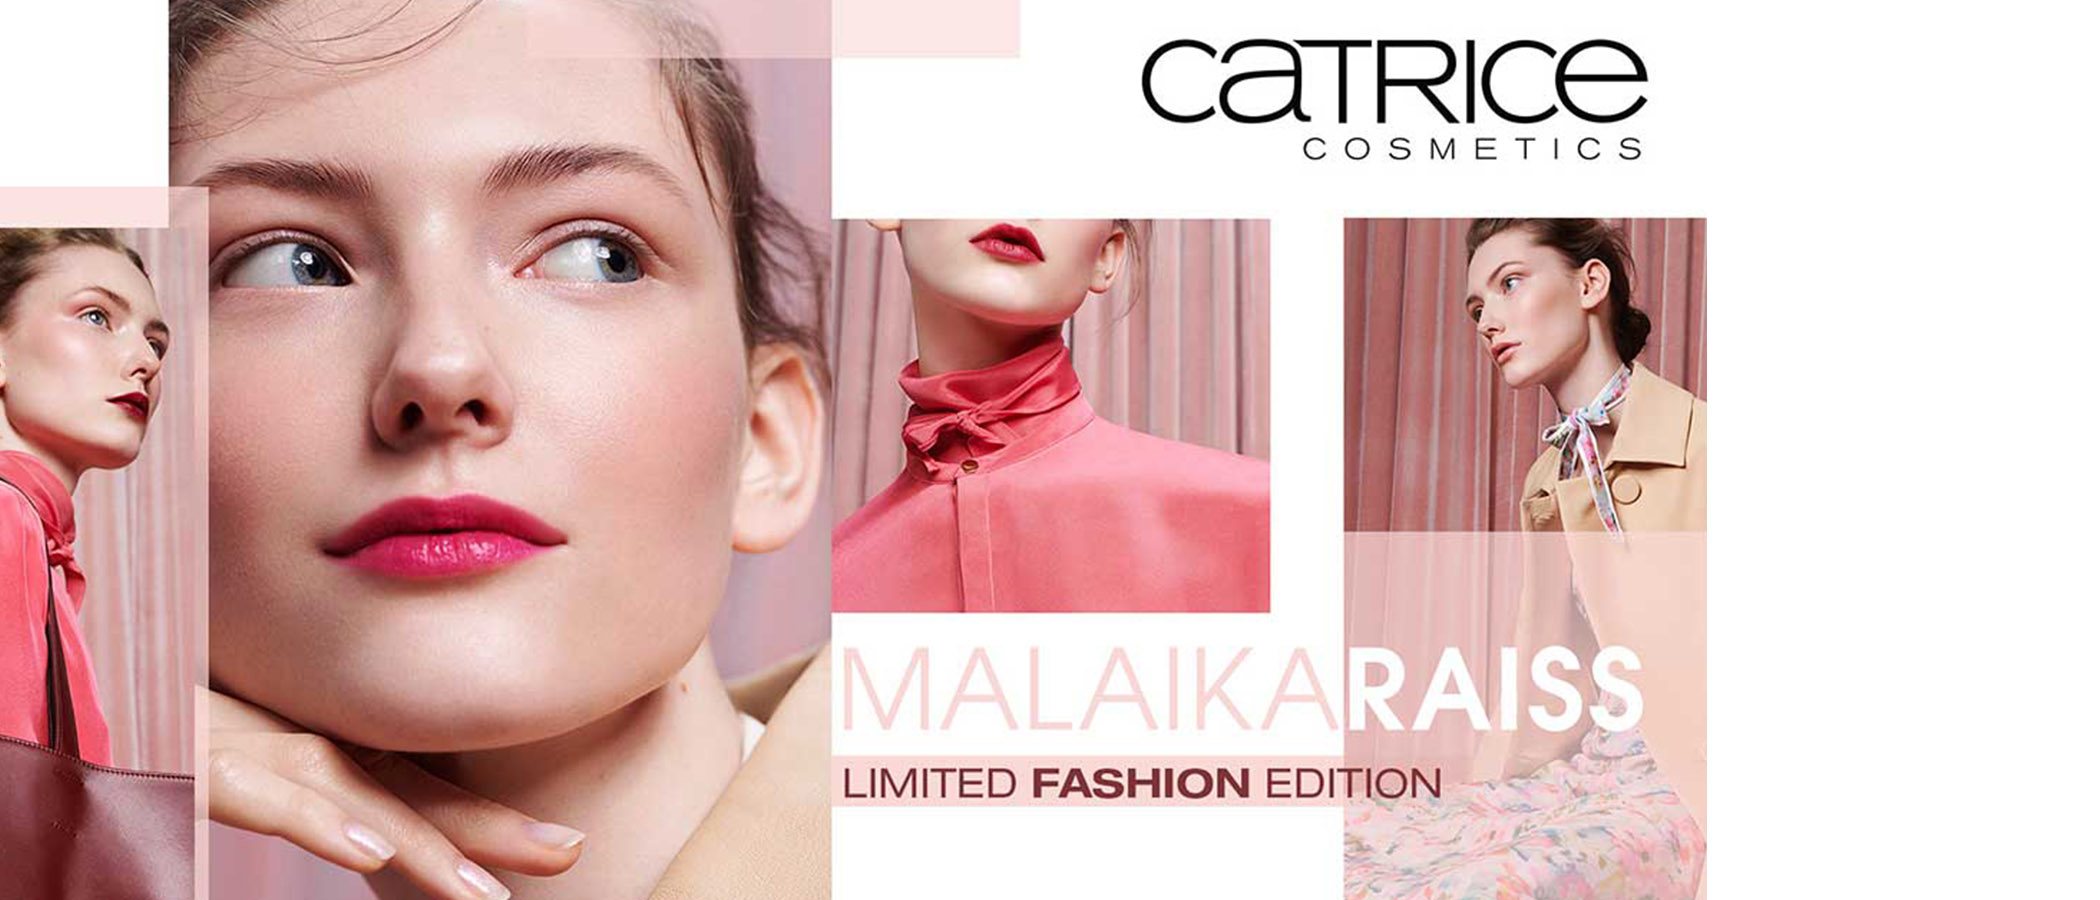 Catrice se une a la diseñadora Malaika Raiss para presentar una nueva y elegante colección de maquillaje